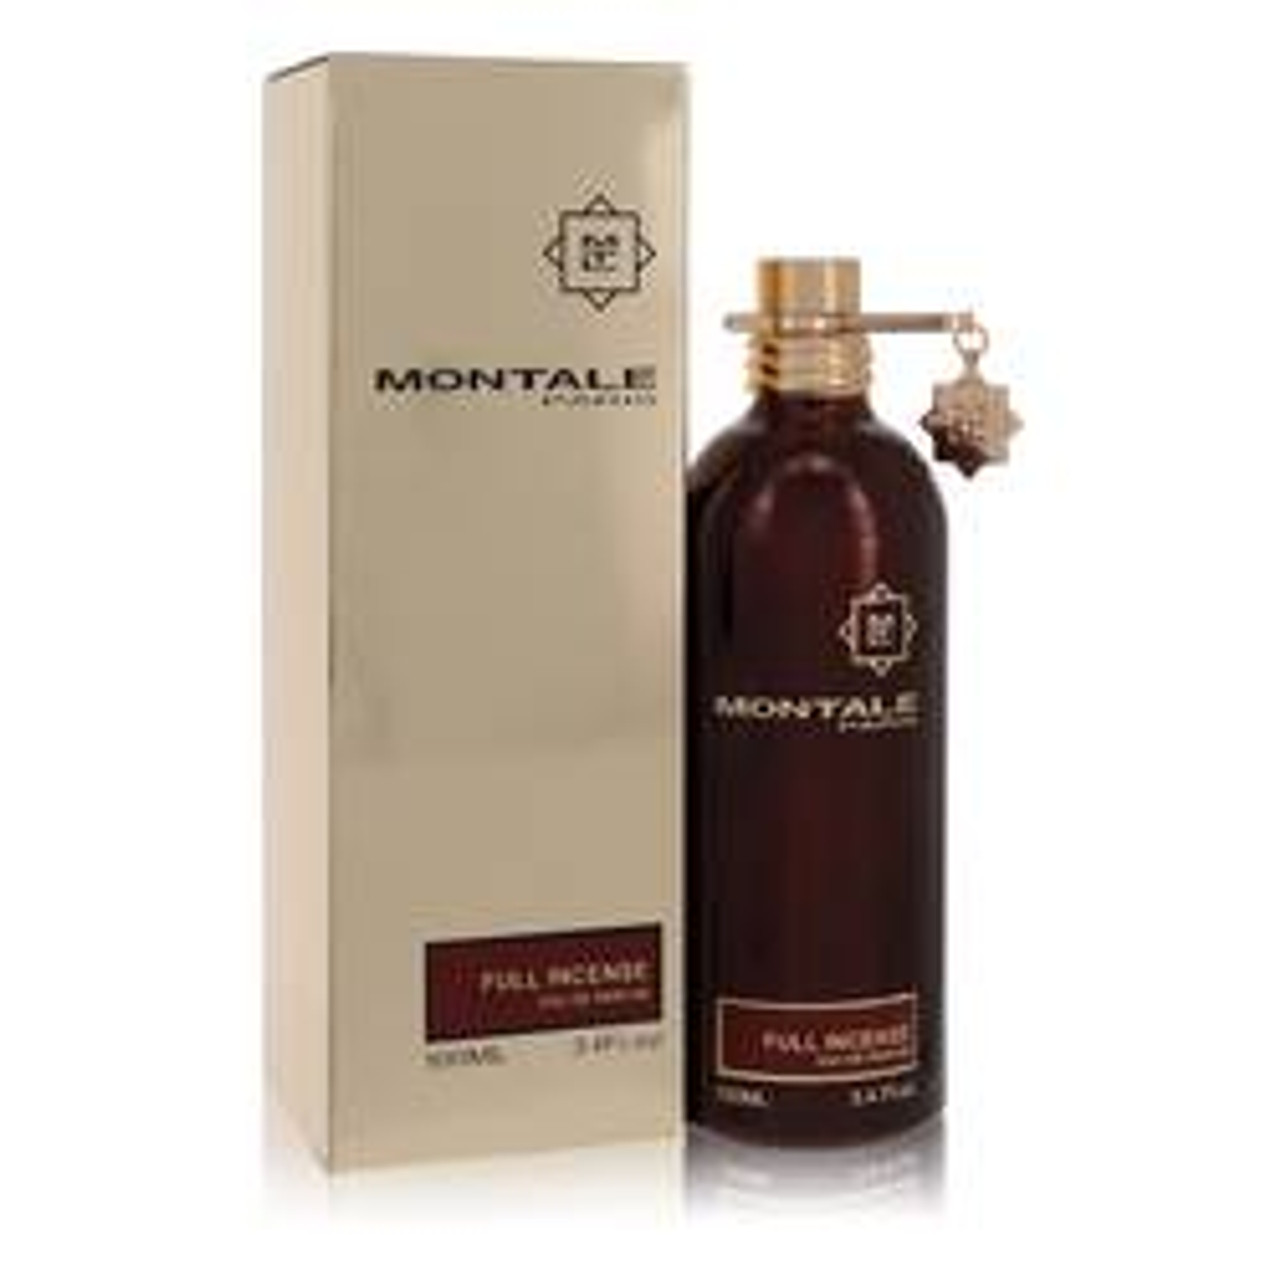 Montale Full Incense Perfume By Montale Eau De Parfum Spray (Unisex) 3.4 oz for Women - *Pre-Order